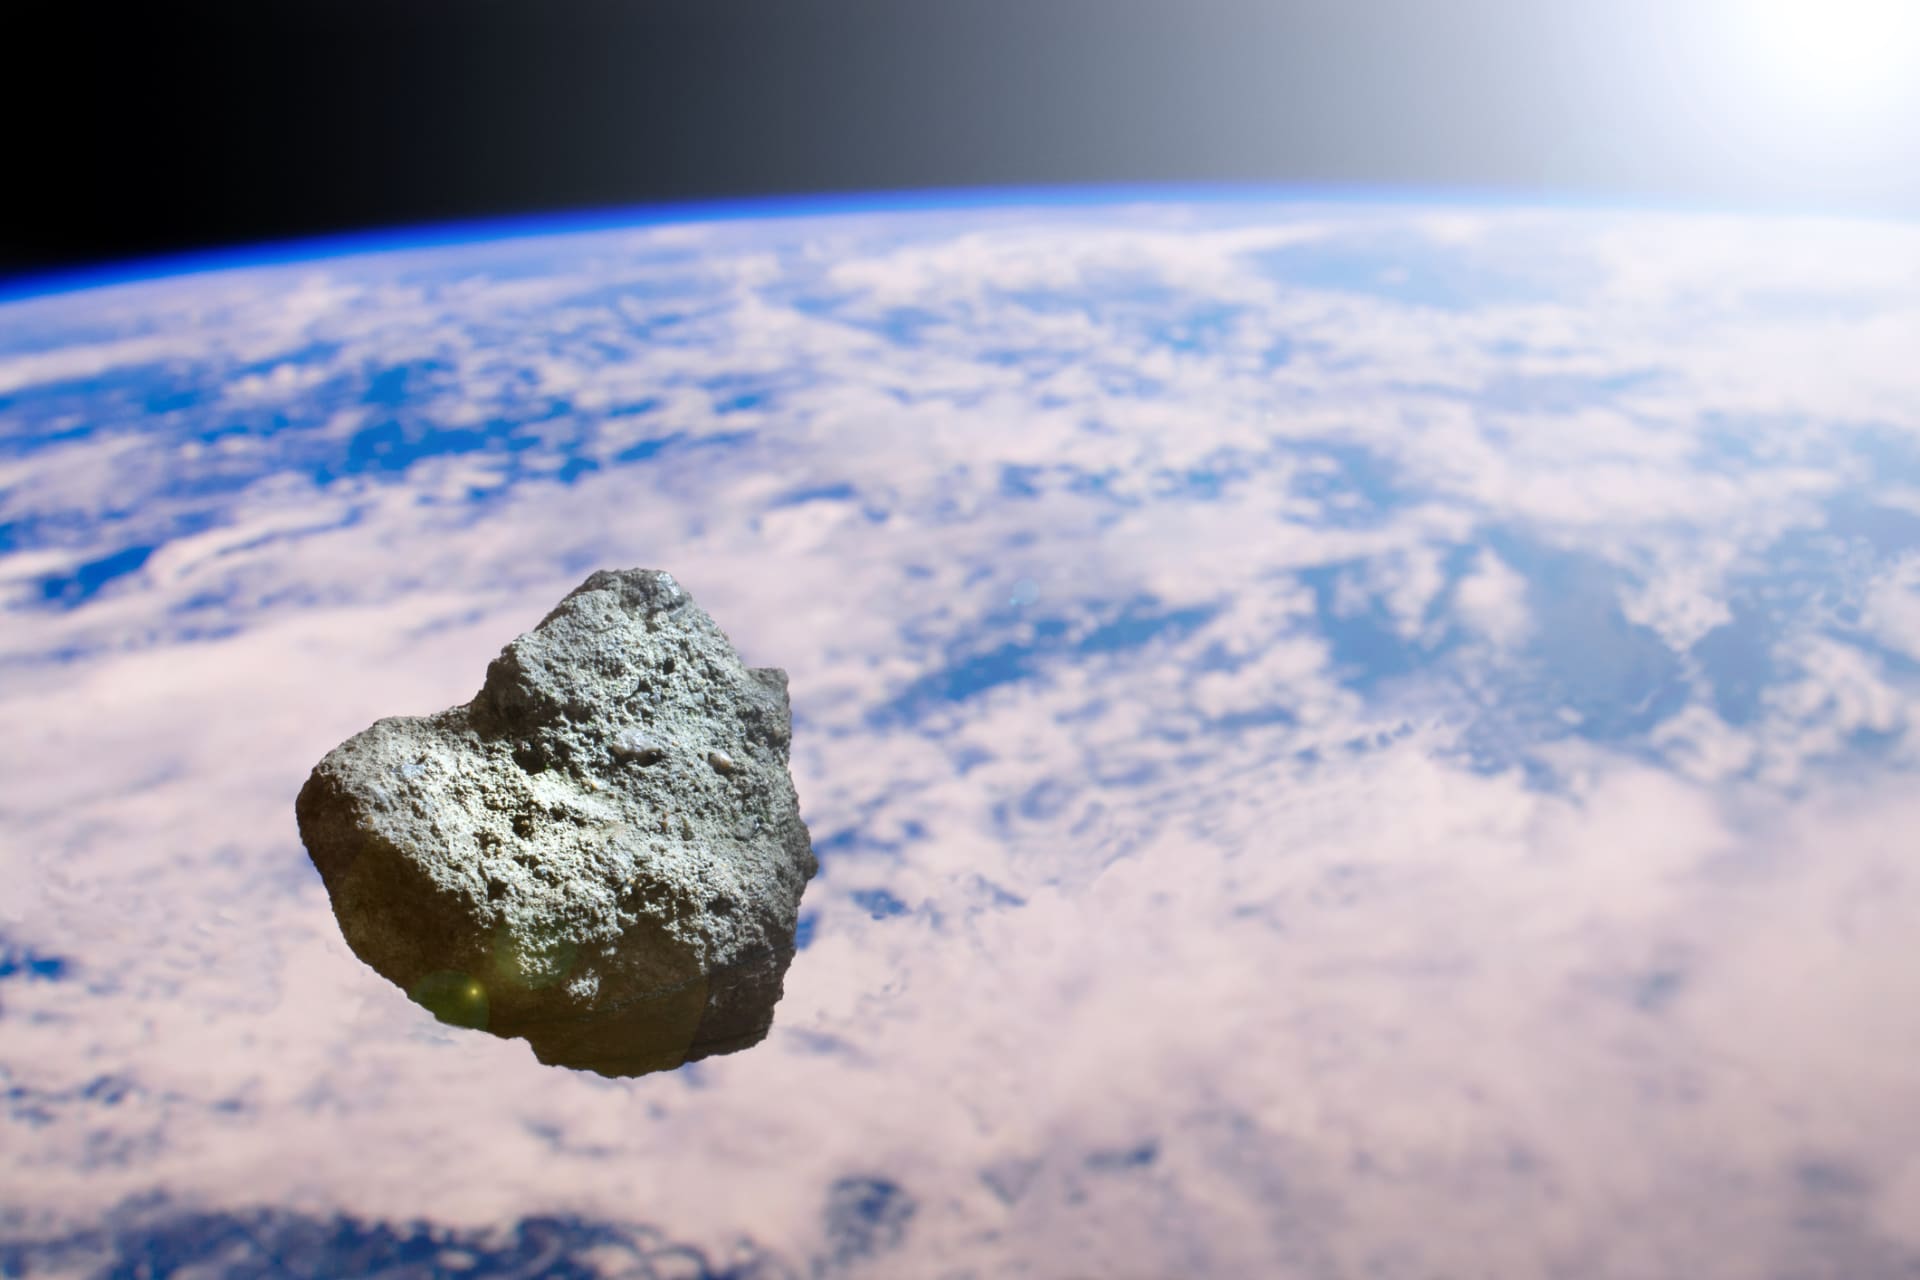 V sobotu proletí kolem Země asteroid o průměru 25 metrů